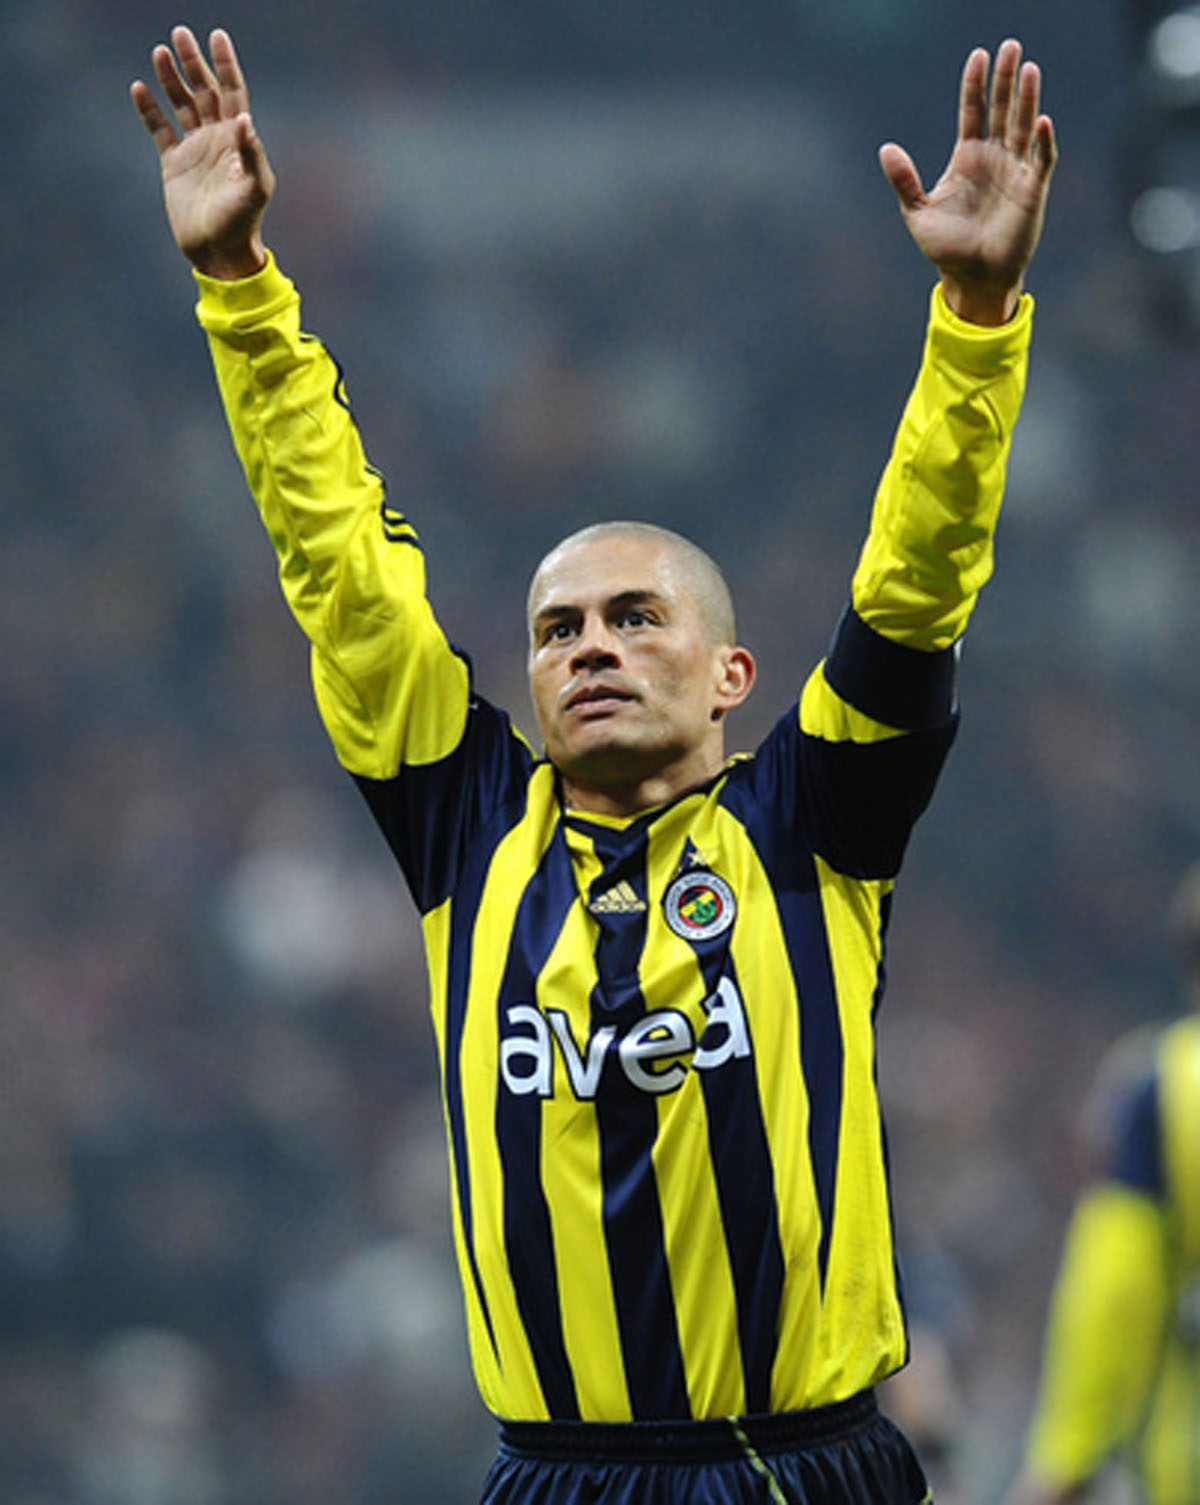 FENERBAHÇE HABERLERİ - Fenerbahçe’de çarpıcı istatistik! 2010-11 sezonundan beri Alex de Souza’yı geçen yok